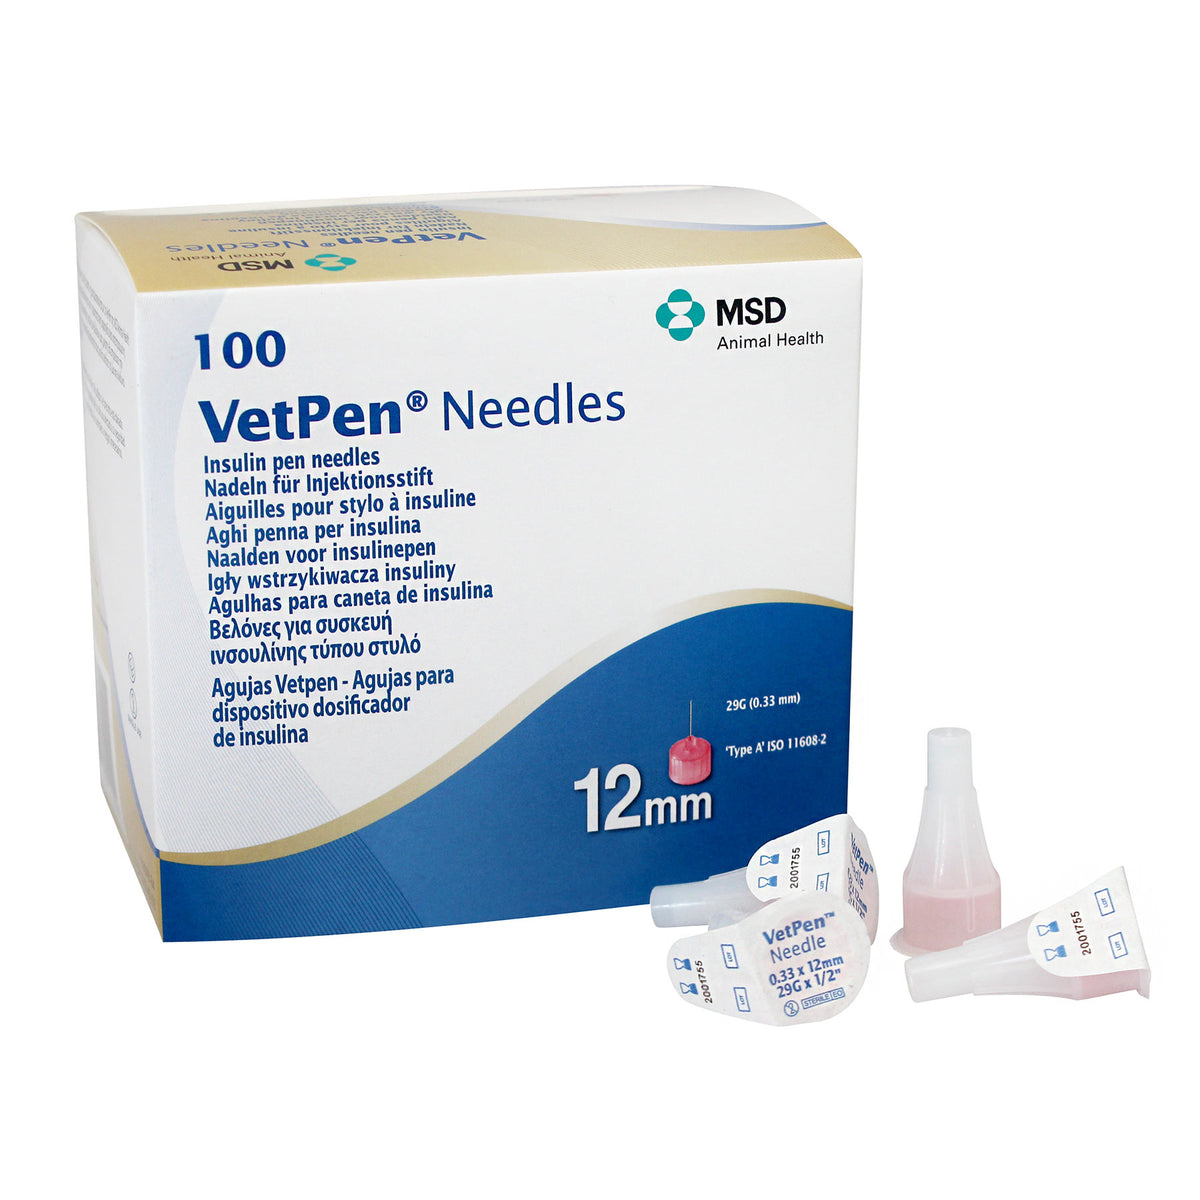 VetPen Needles - 100